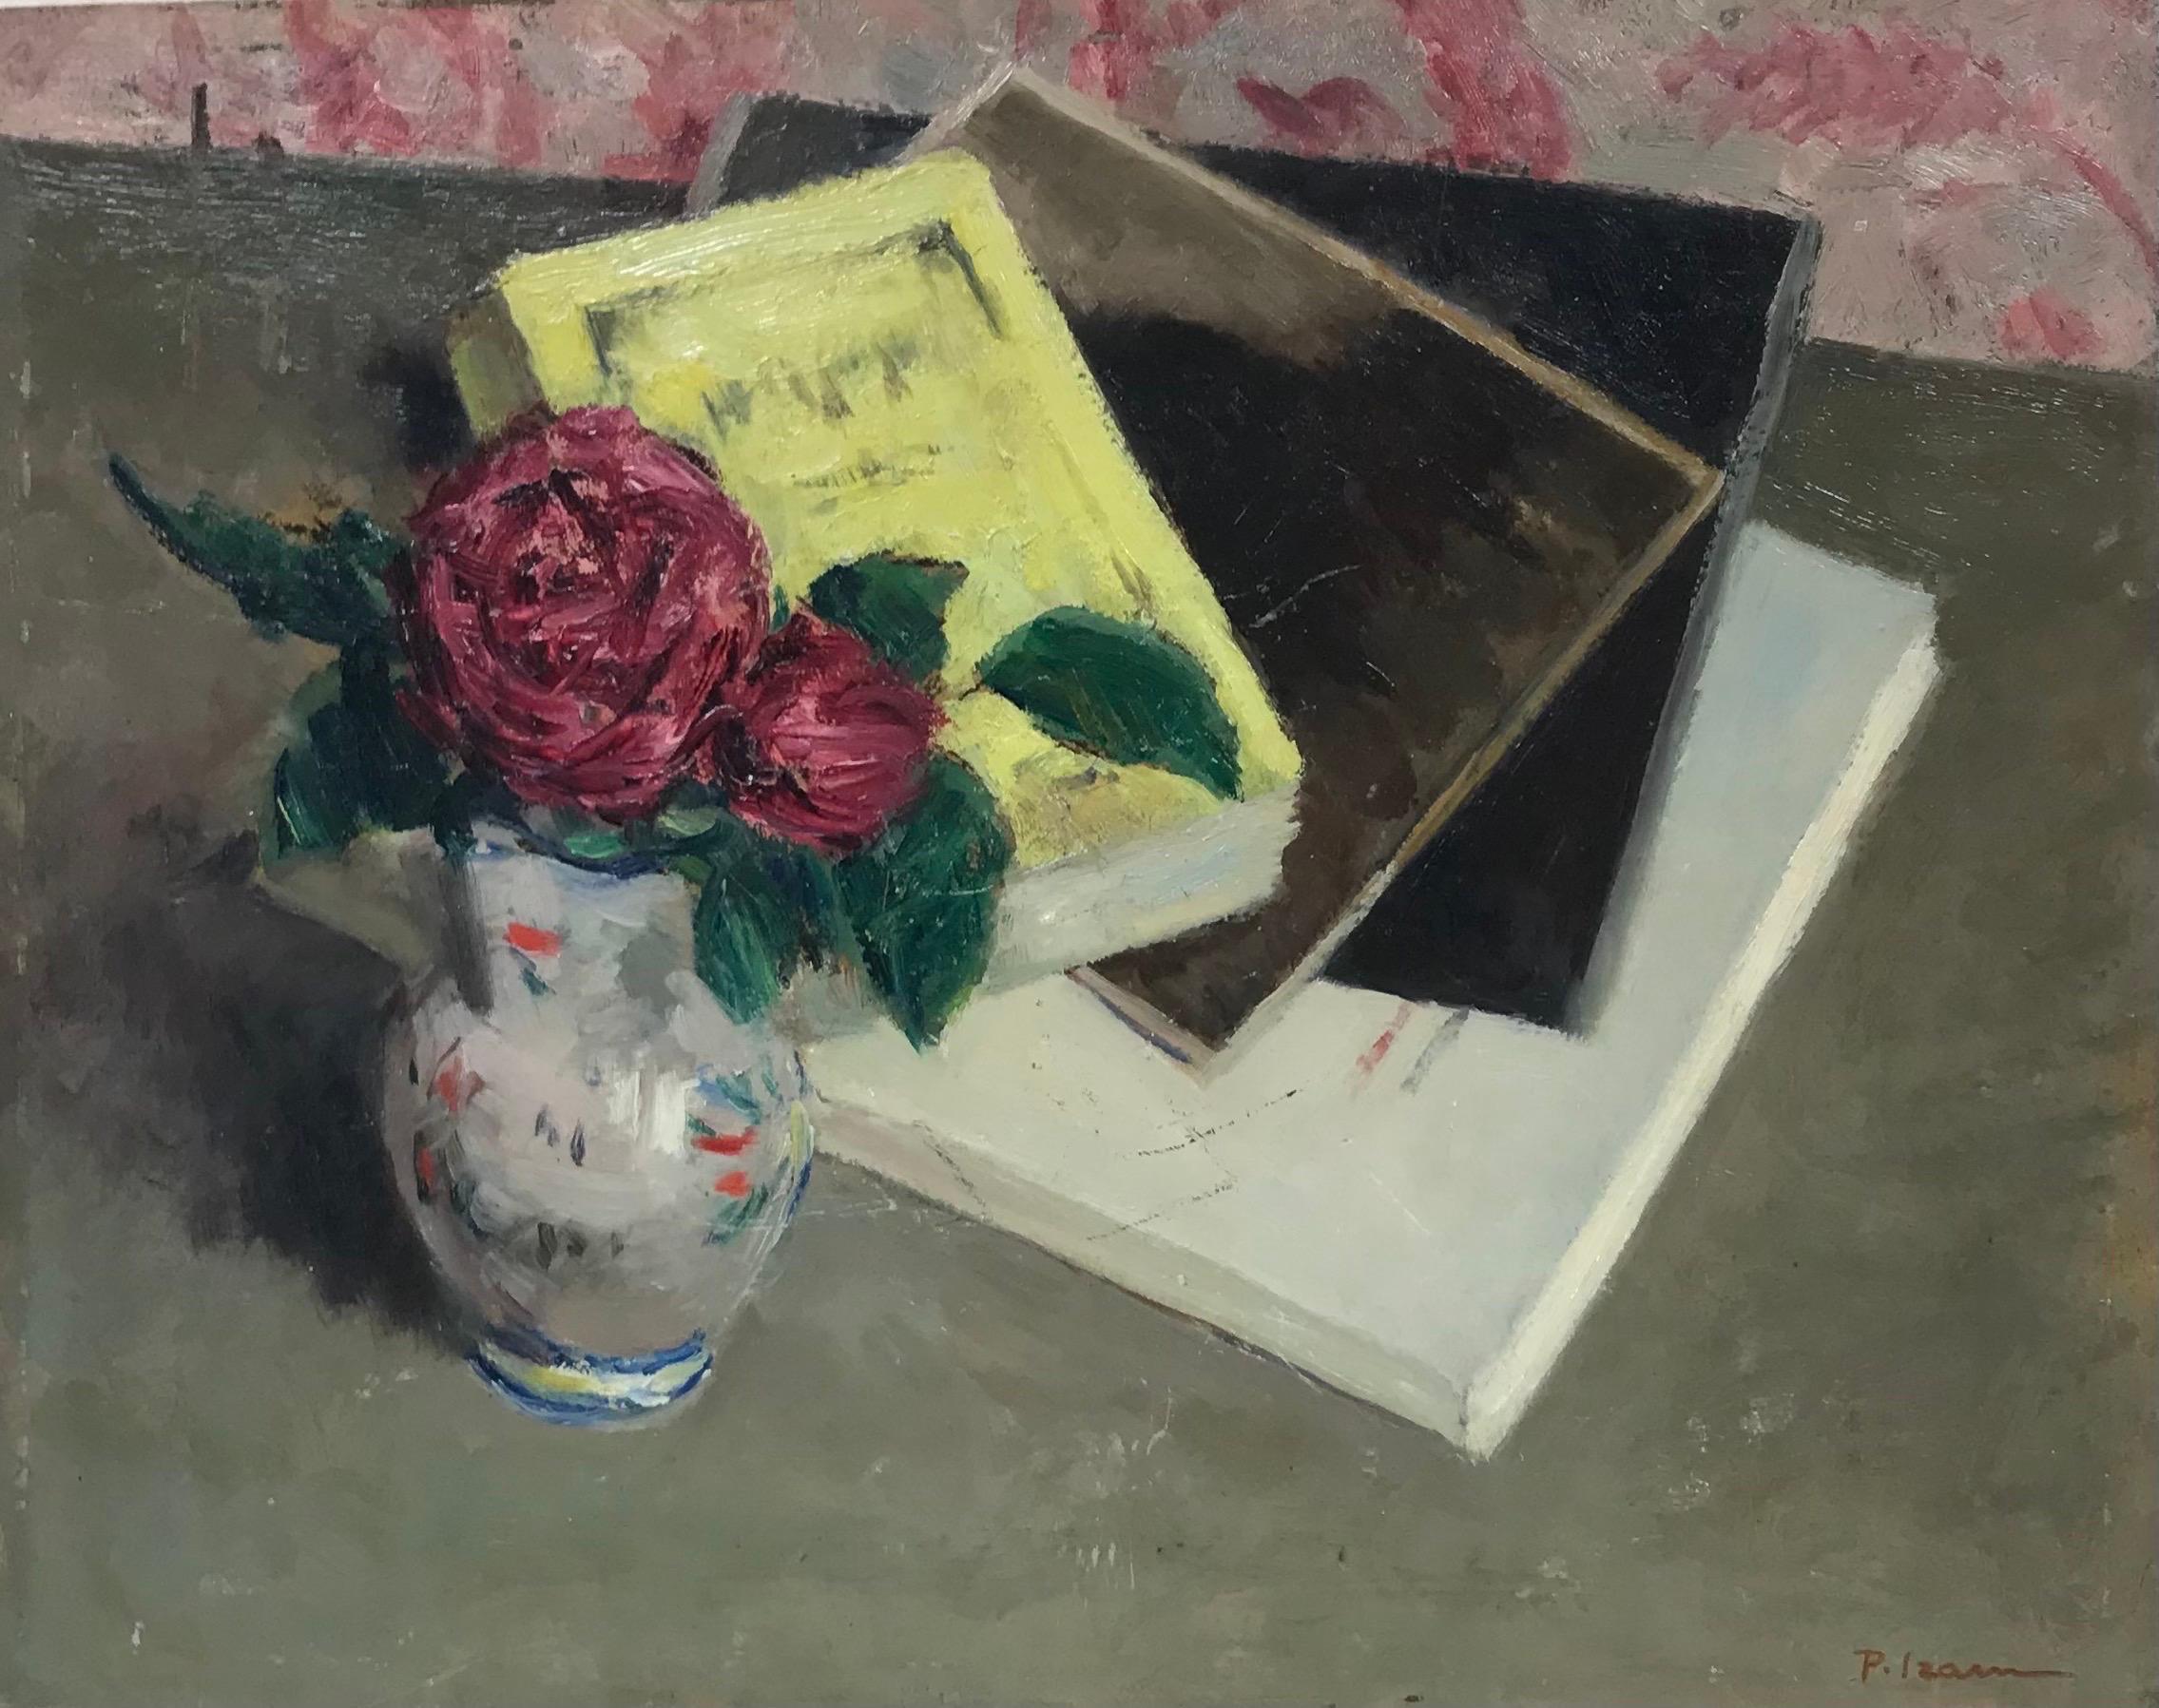 Vieille peinture à l'huile française du milieu du XXe siècle, signée, représentant des roses dans un vase et des livres